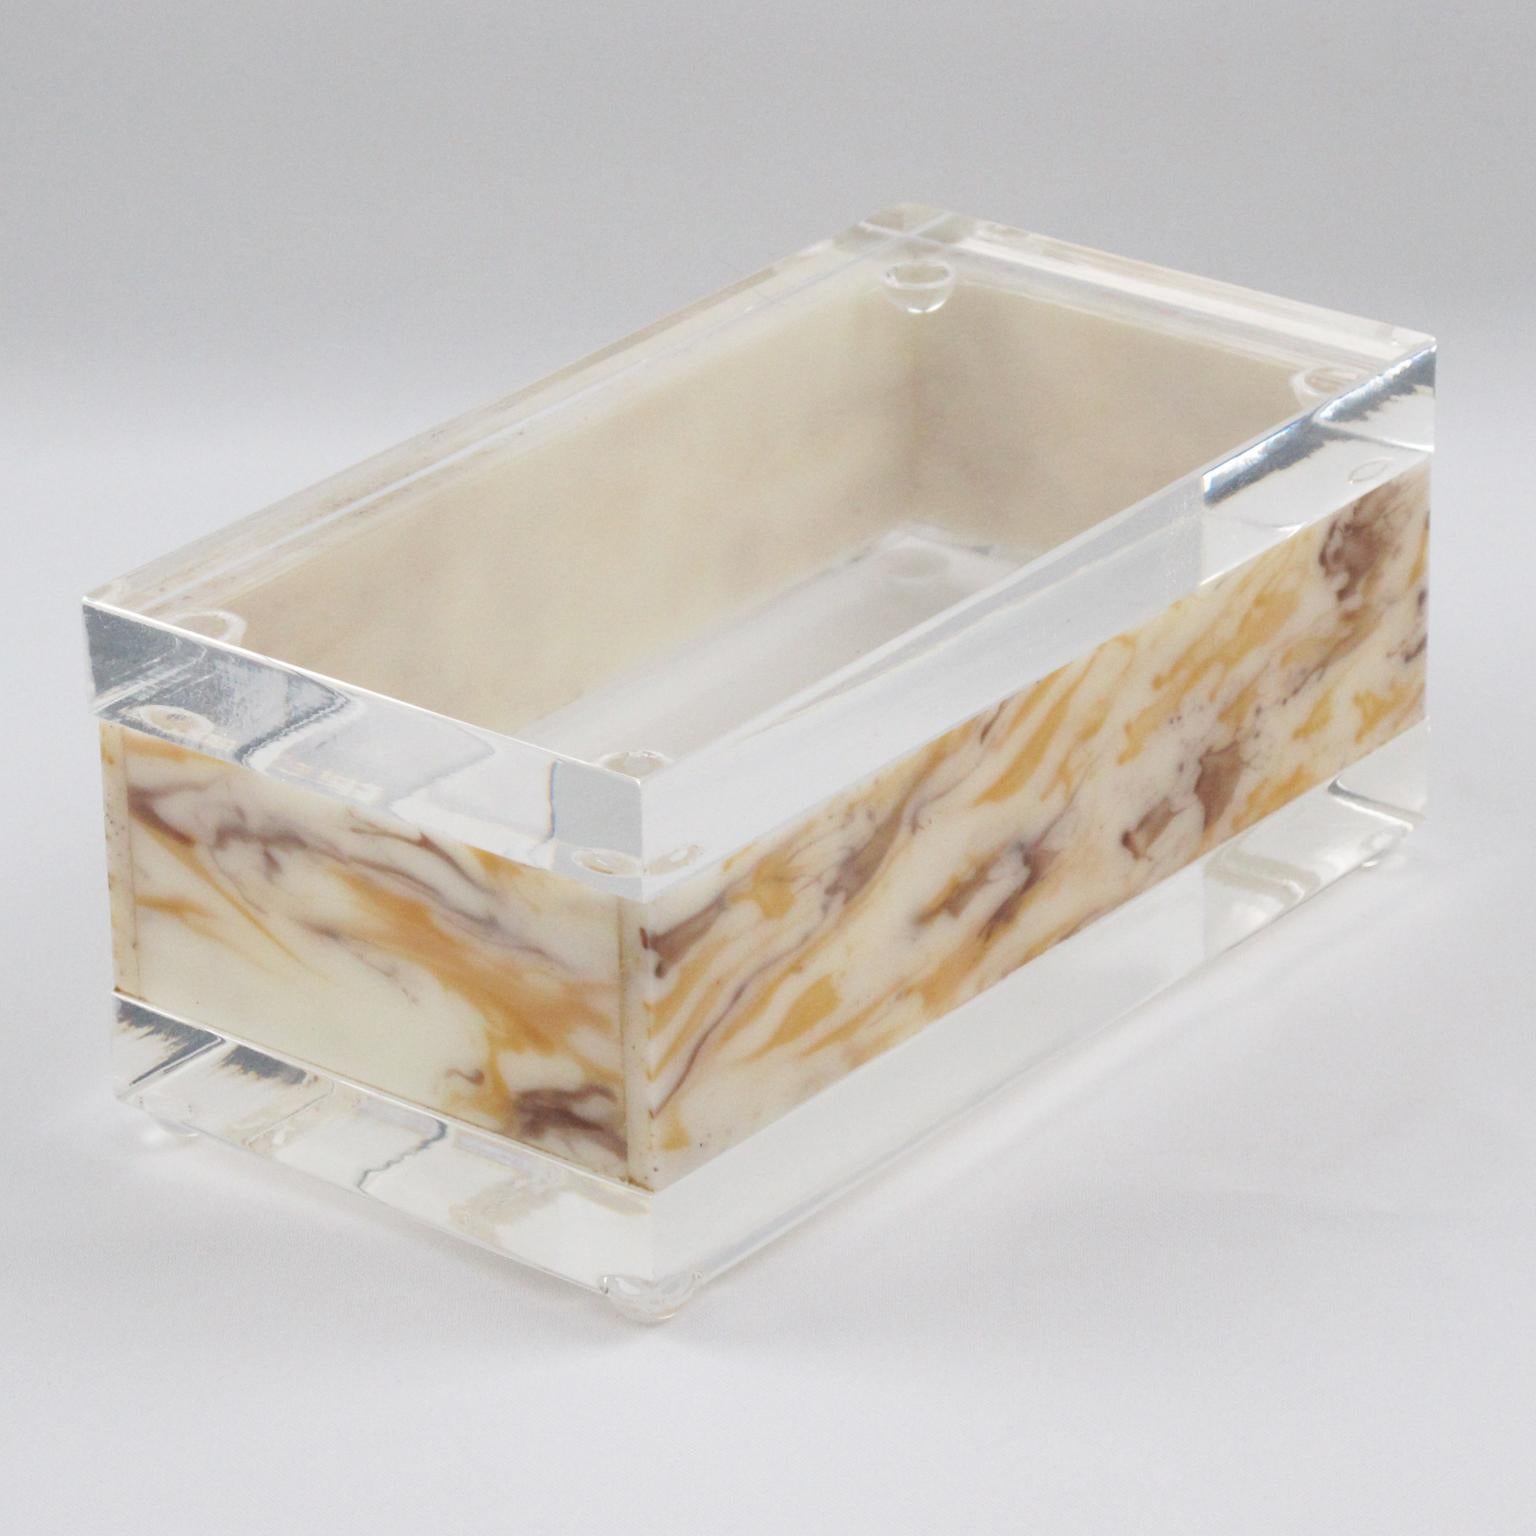 Diese schöne modernistische Lucite-Box wurde in den 1970er Jahren hergestellt. Die rechteckige Form zeichnet sich durch ein kristallklares Lucite- oder Acrylglas- und Kunstmarmor-Muster aus. Die atemberaubende Farbe aus milchigem Honig und